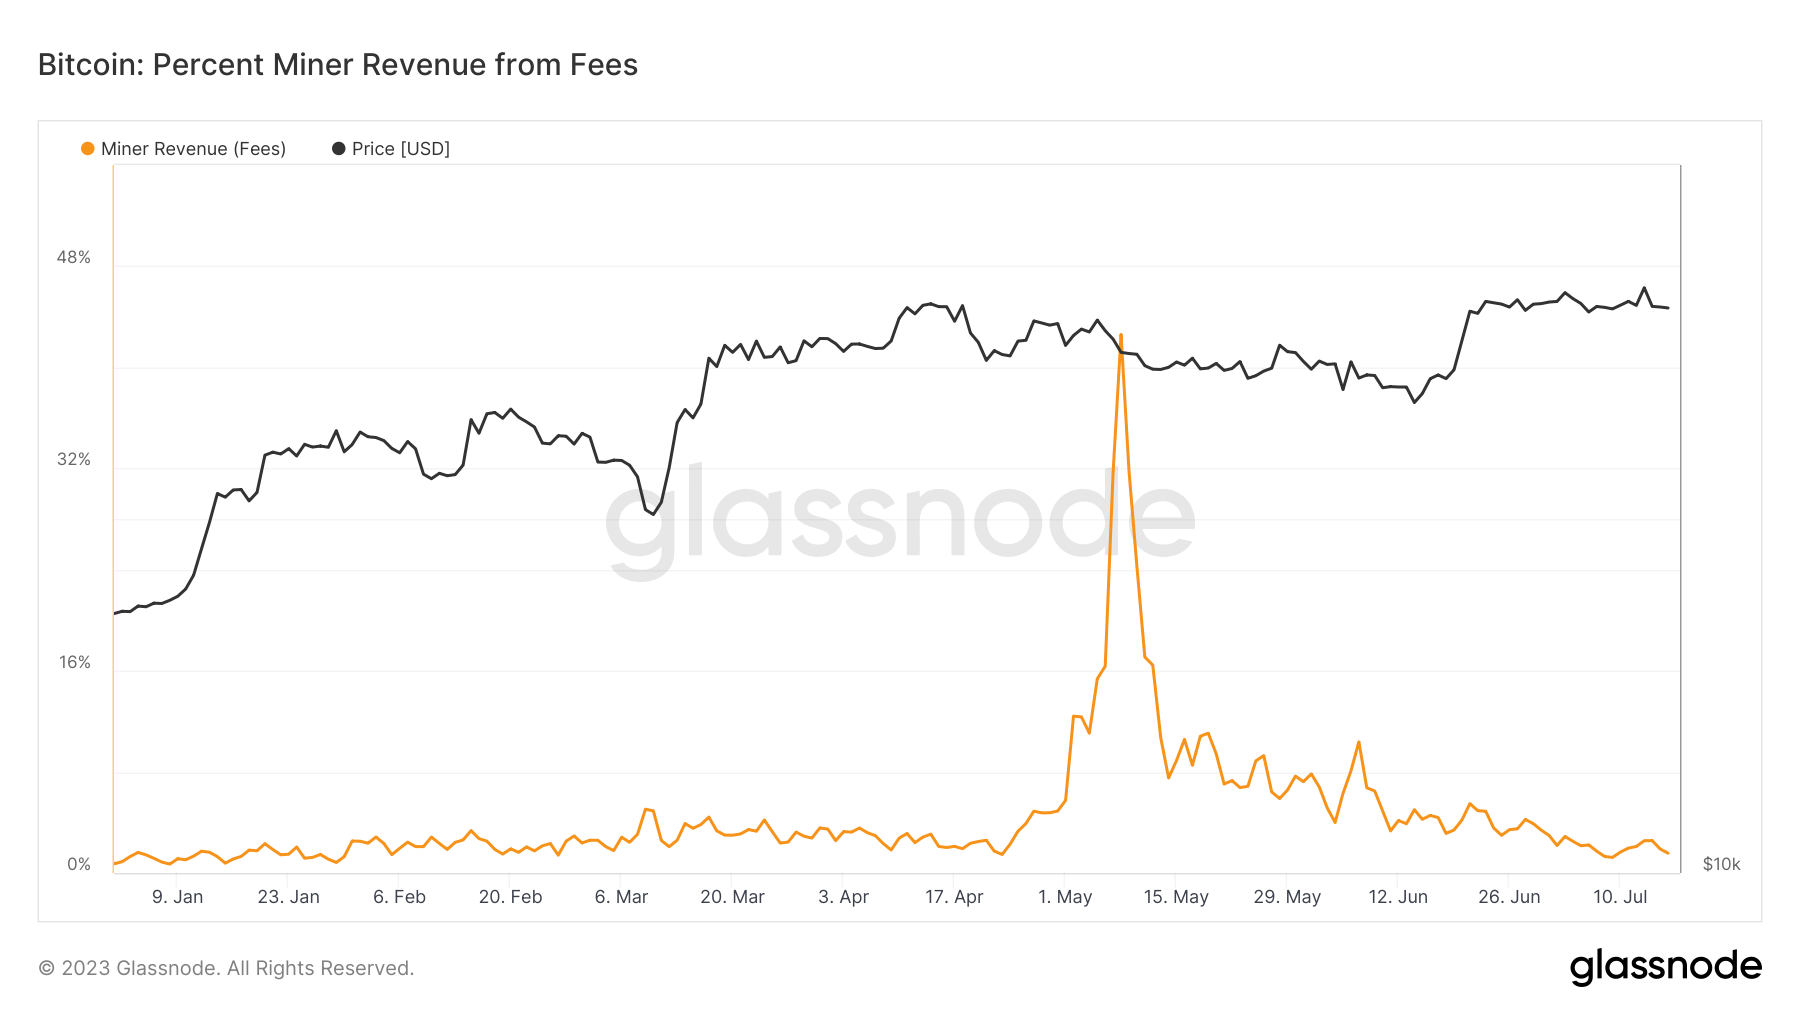 pourcentage de revenus du mineur de bitcoin provenant des frais depuis le début de l'année